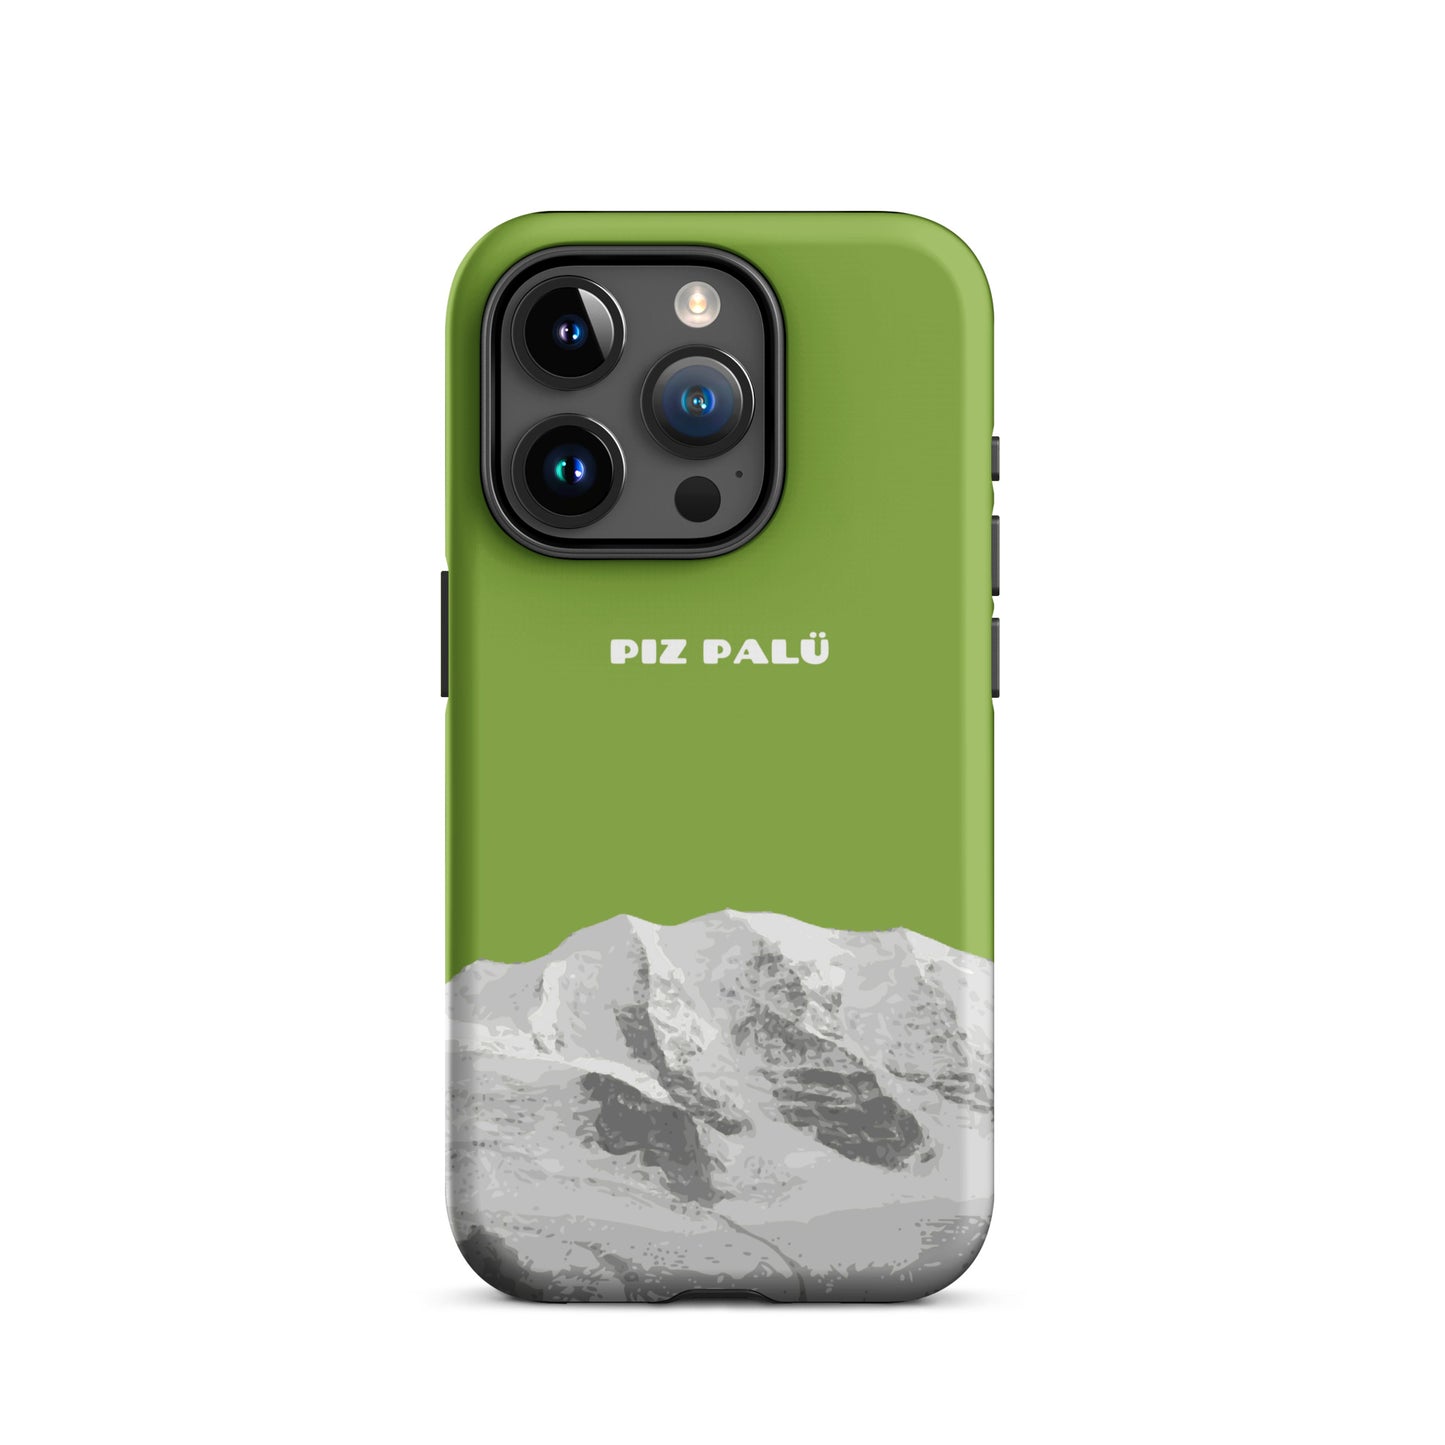 Hülle für das iPhone 15 Pro von Apple in der Farbe Gelbgrün, dass den Piz Palü in Graubünden zeigt. 